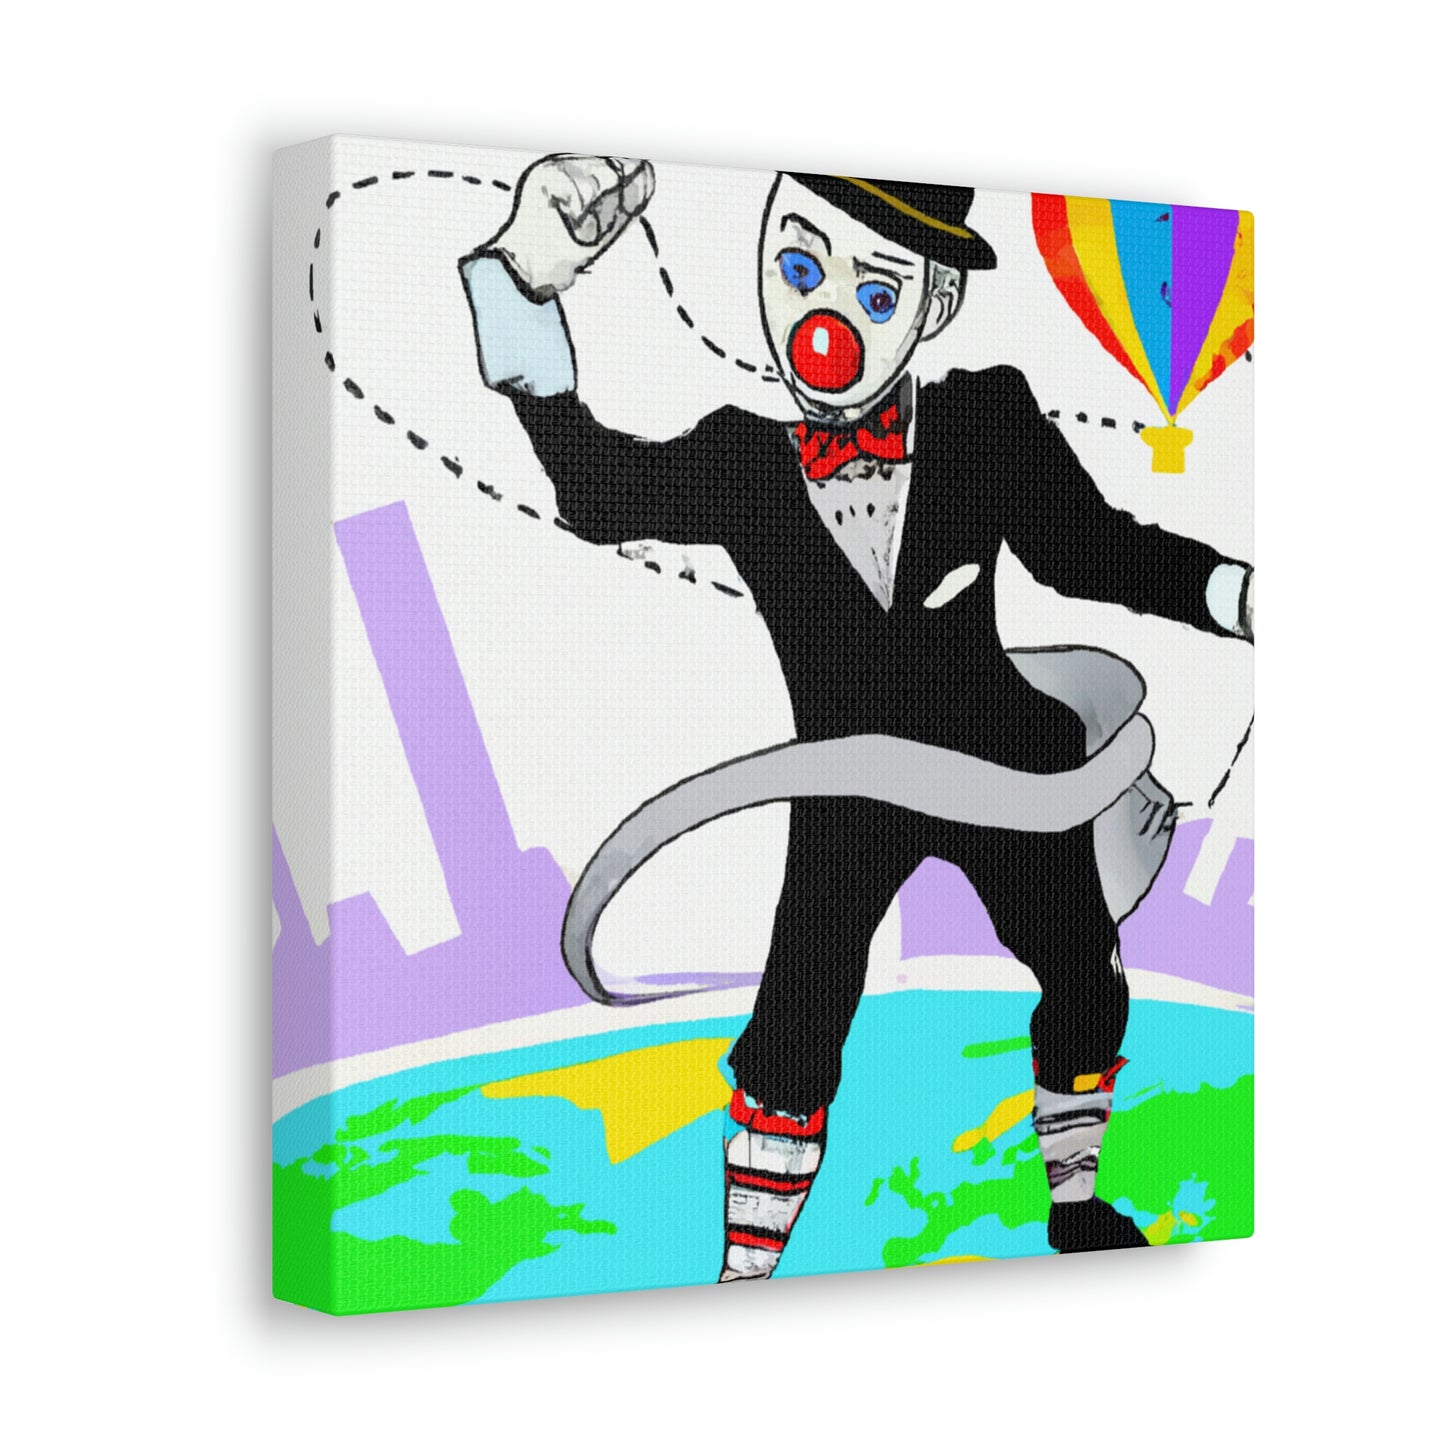 The Great Spy-Clown Caper - The Alien Canva